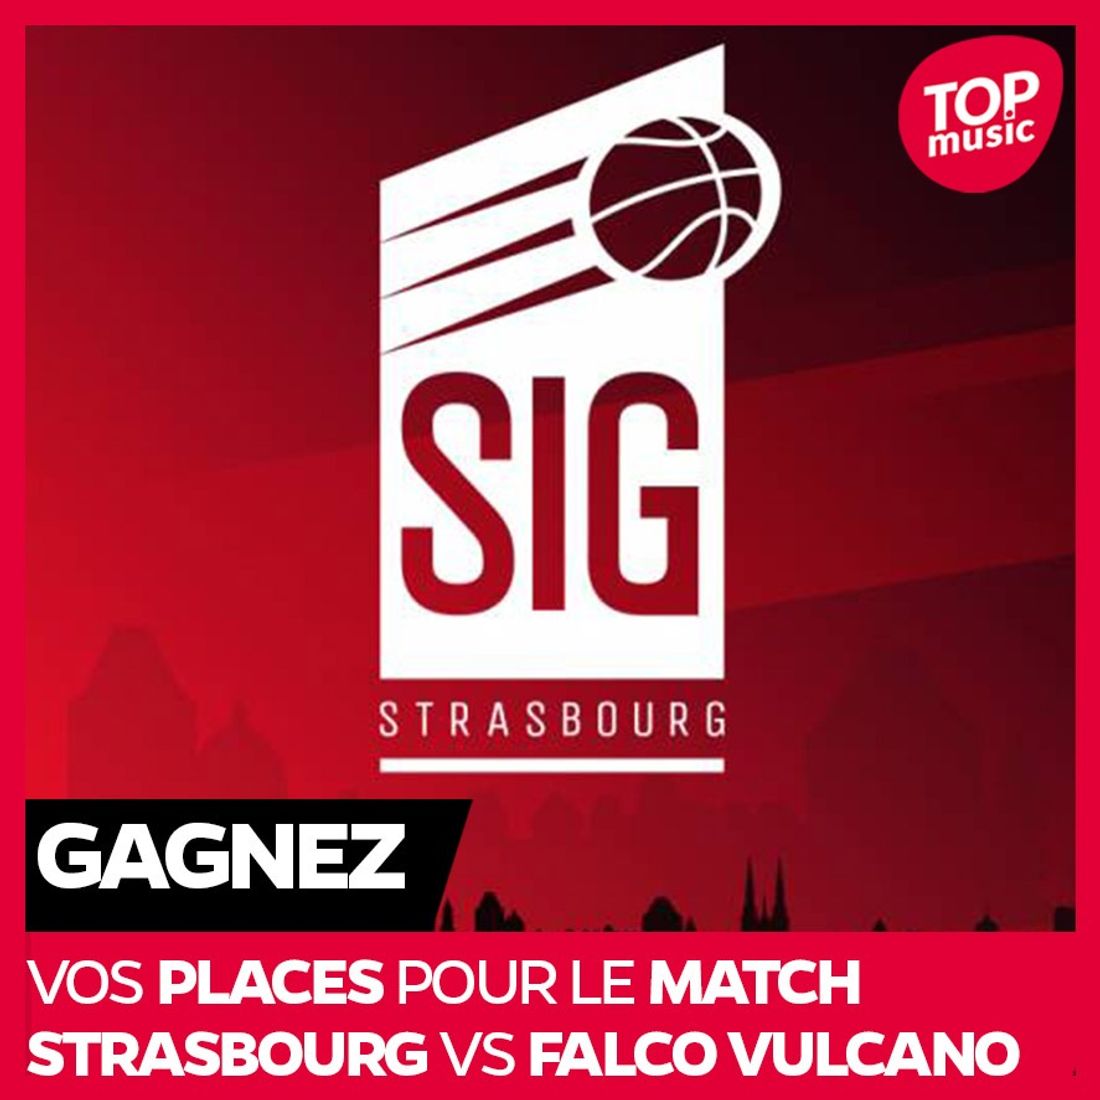 Gagnez vos places pour le match Strasbourg vs Falco Vulcano !